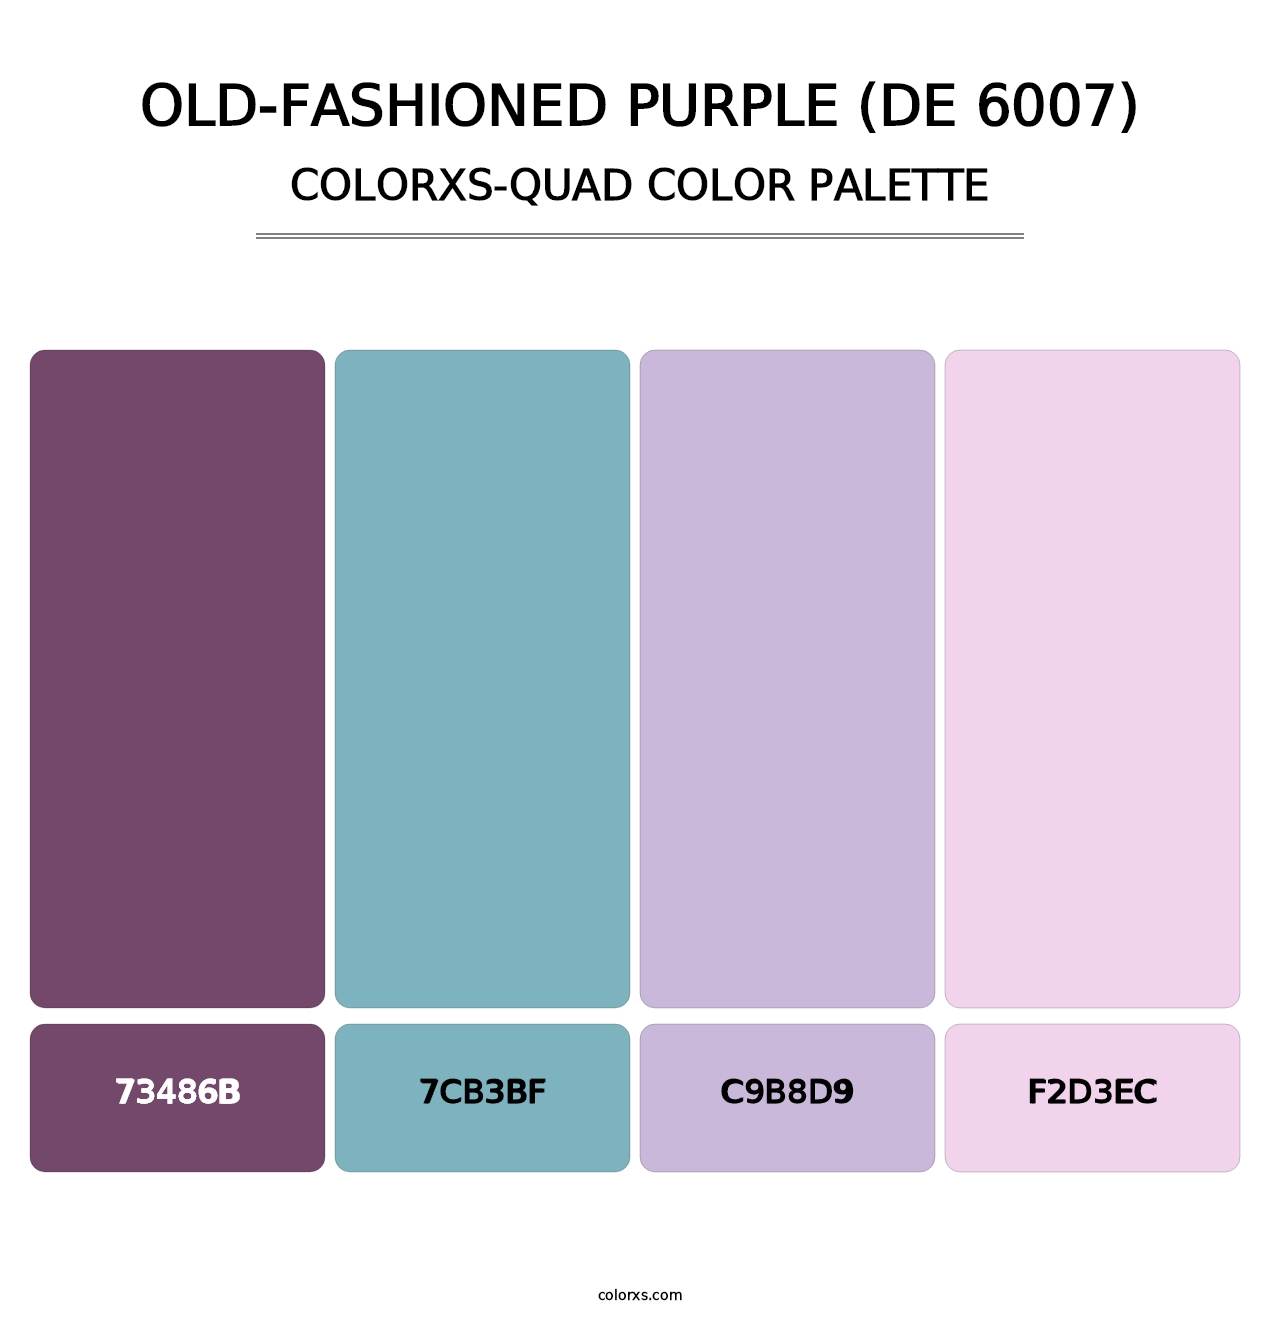 Old-Fashioned Purple (DE 6007) - Colorxs Quad Palette